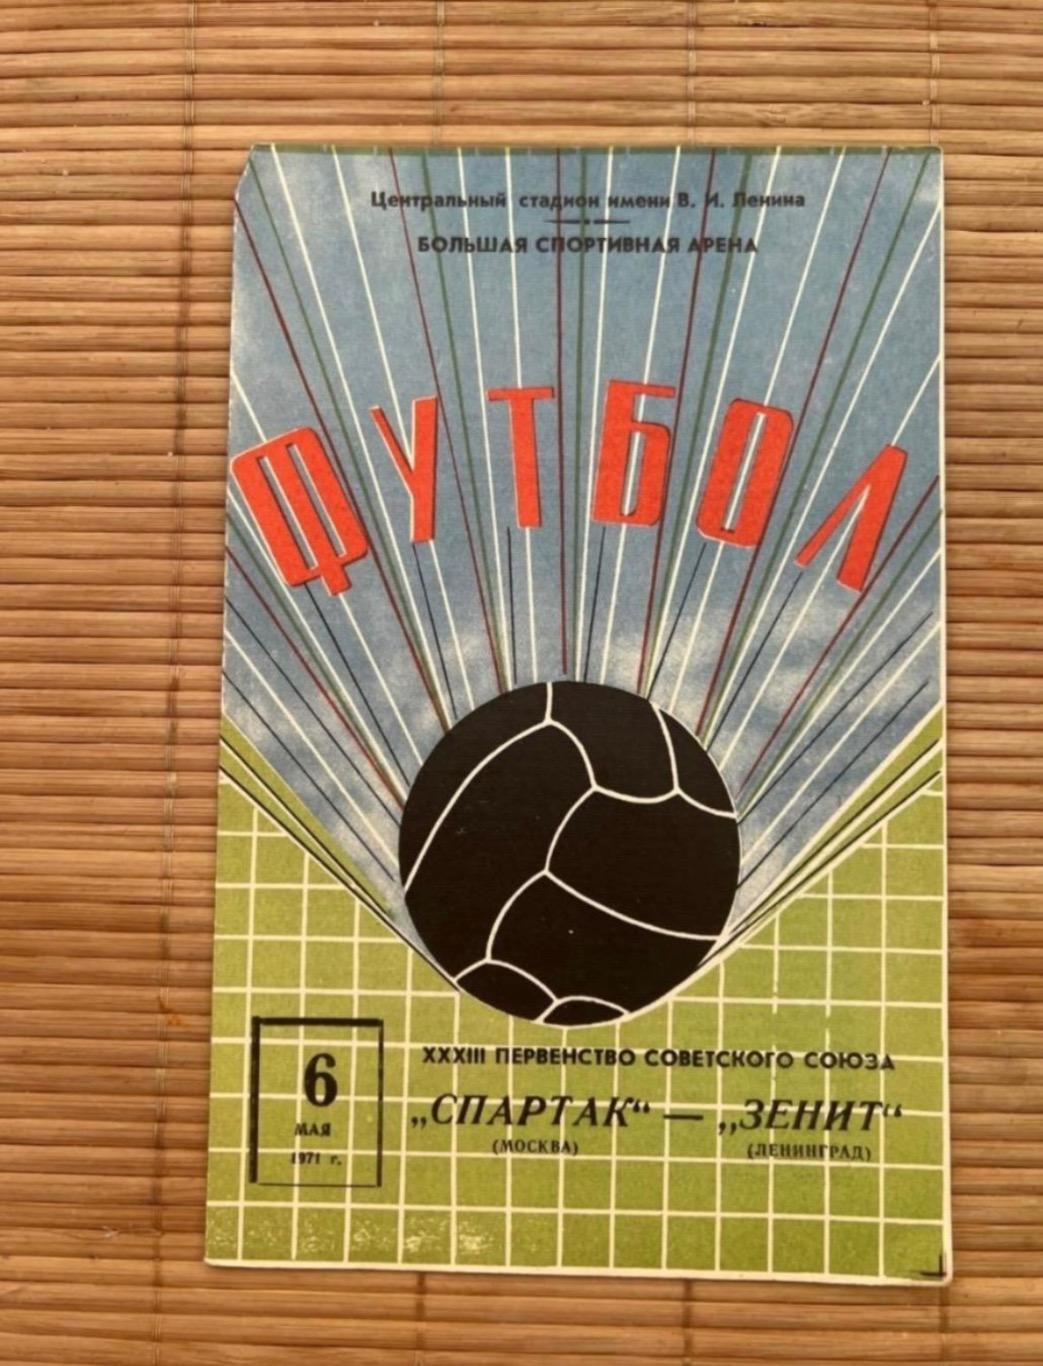 Спартак Москва - зенит 6.05.1971